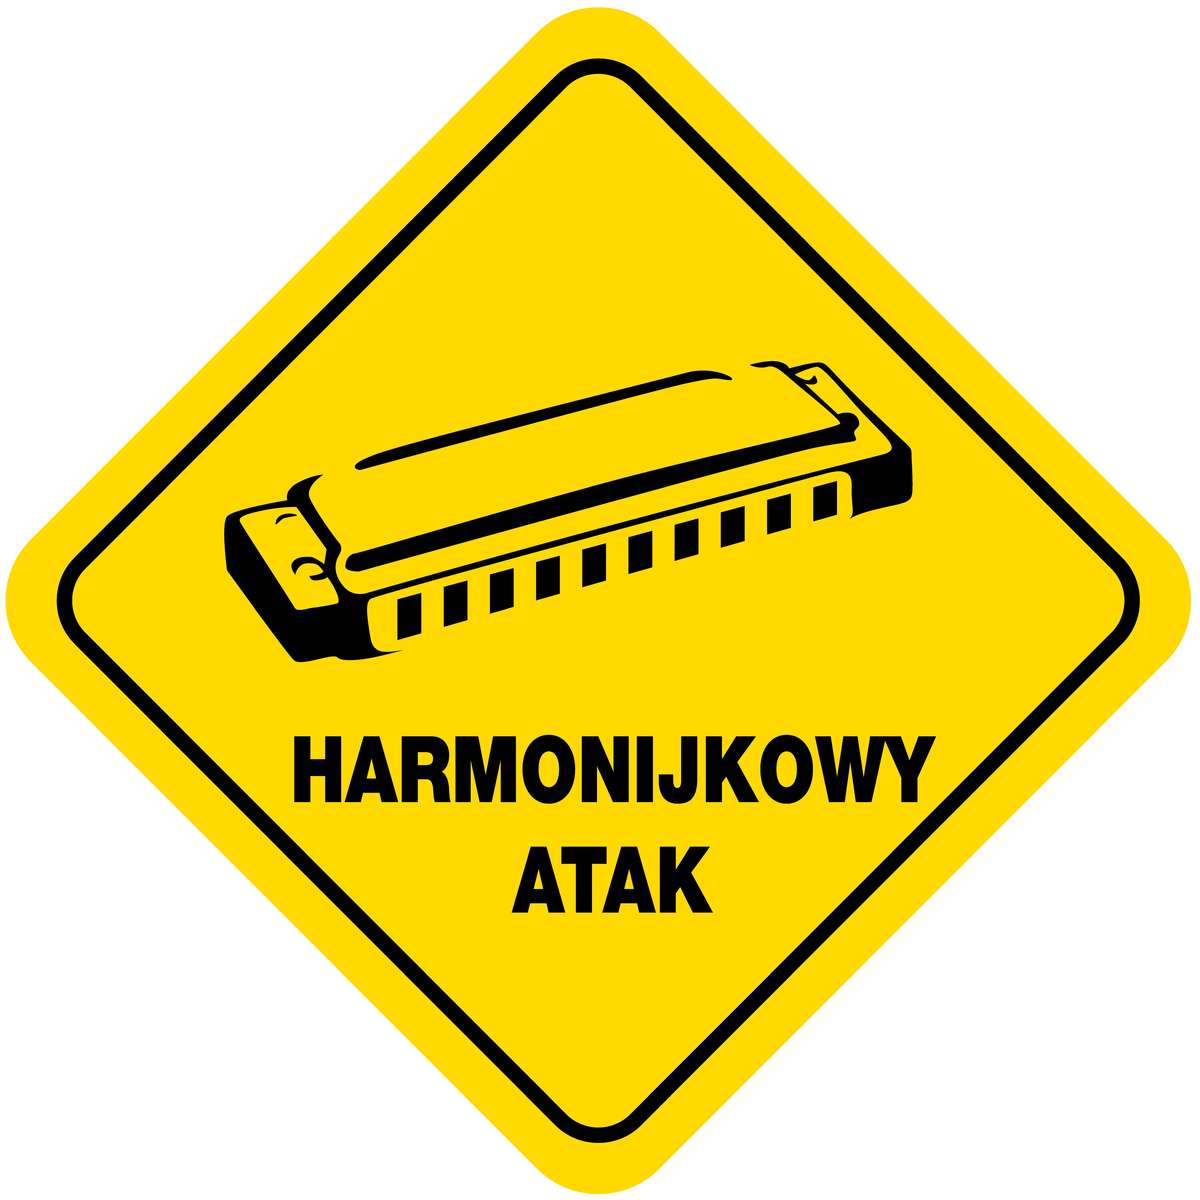 Harmonijkowy Atak w Sowie - full image